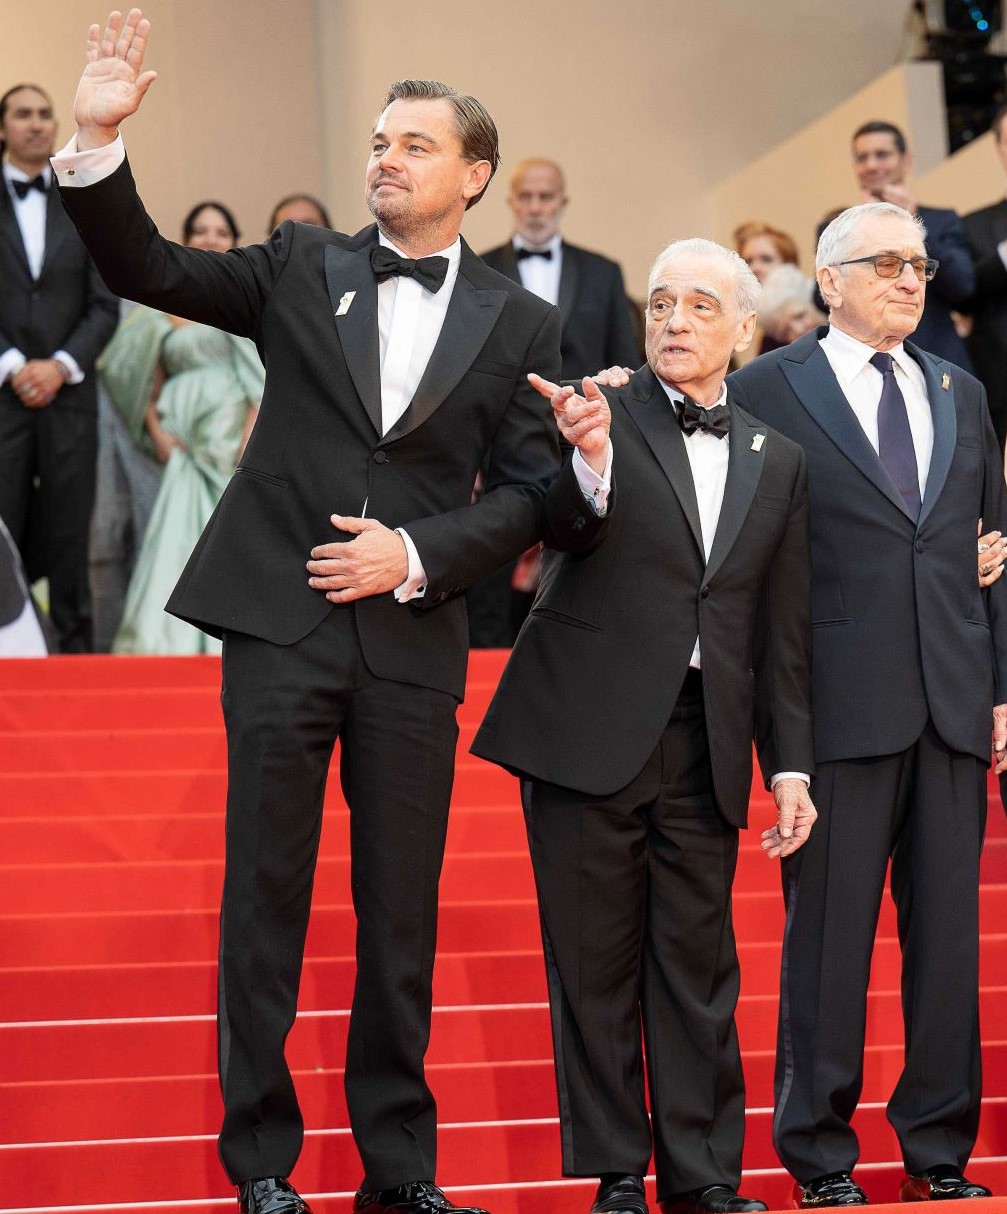 カンヌ国際映画祭のレッドカーペットで、マーティン・スコセッシ監督やロバート・デ・ニーロと並ぶレオナルド・ディカプリオ